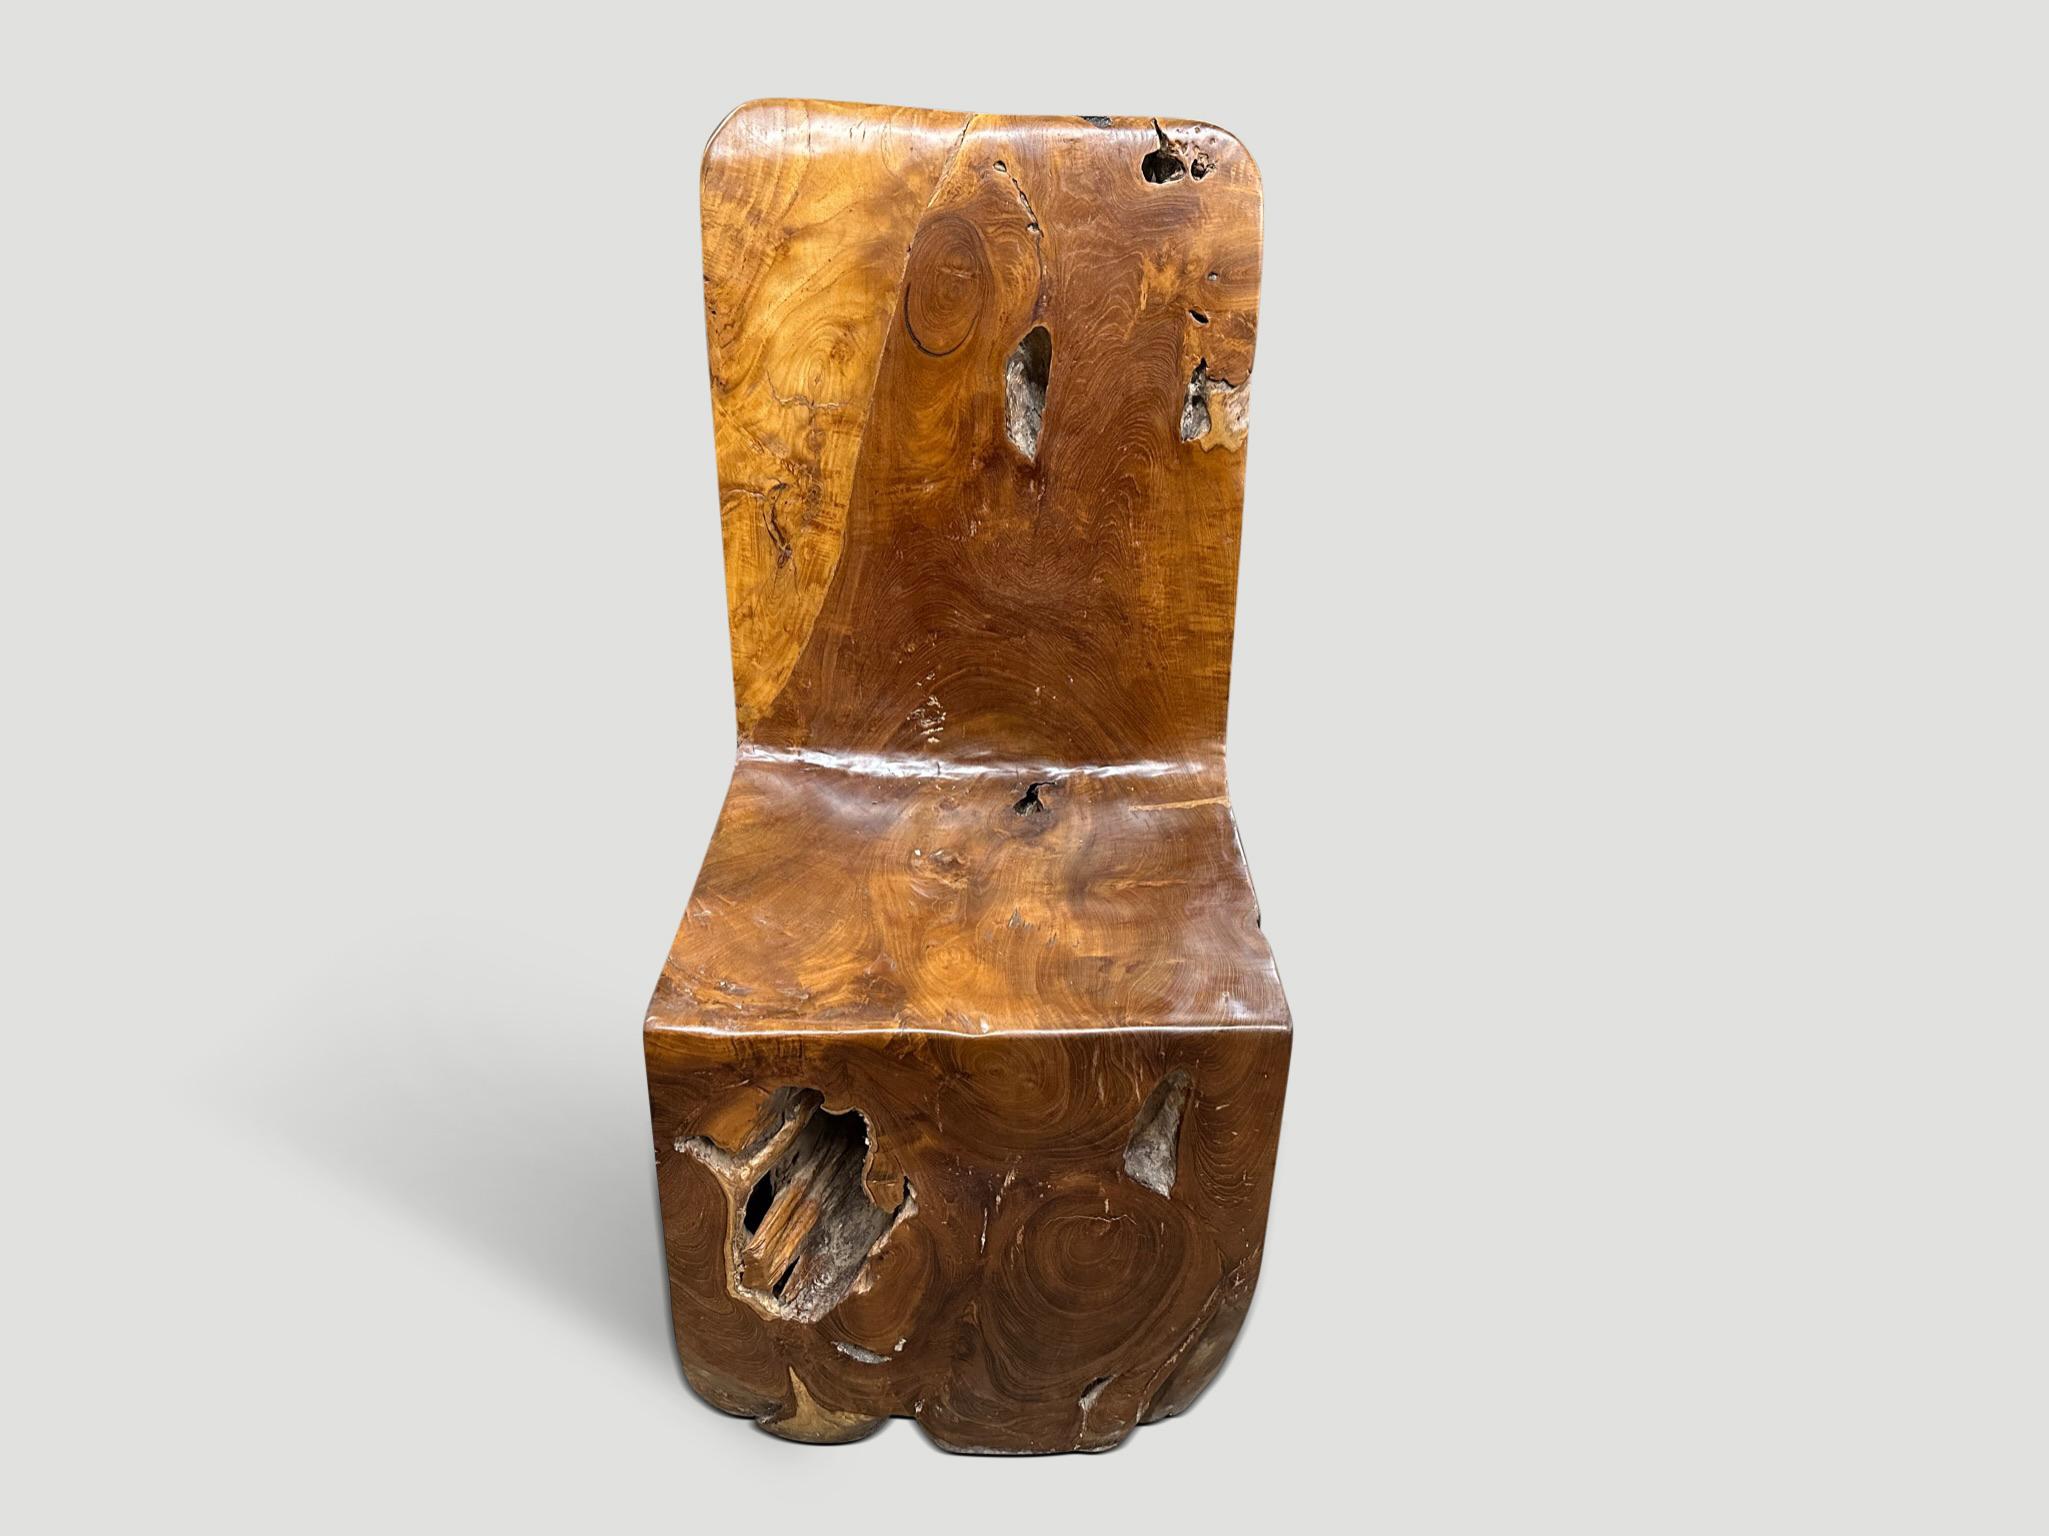 Schöne im Alter von Teakholz handgeschnitzten Stuhl. Dieser skulpturale Stuhl aus massivem Teakholz wurde aus einem einzigen, beeindruckenden Holzblock handgeschnitzt, wobei das natürliche, organische Holz respektiert wurde. Wir haben einen Satz von